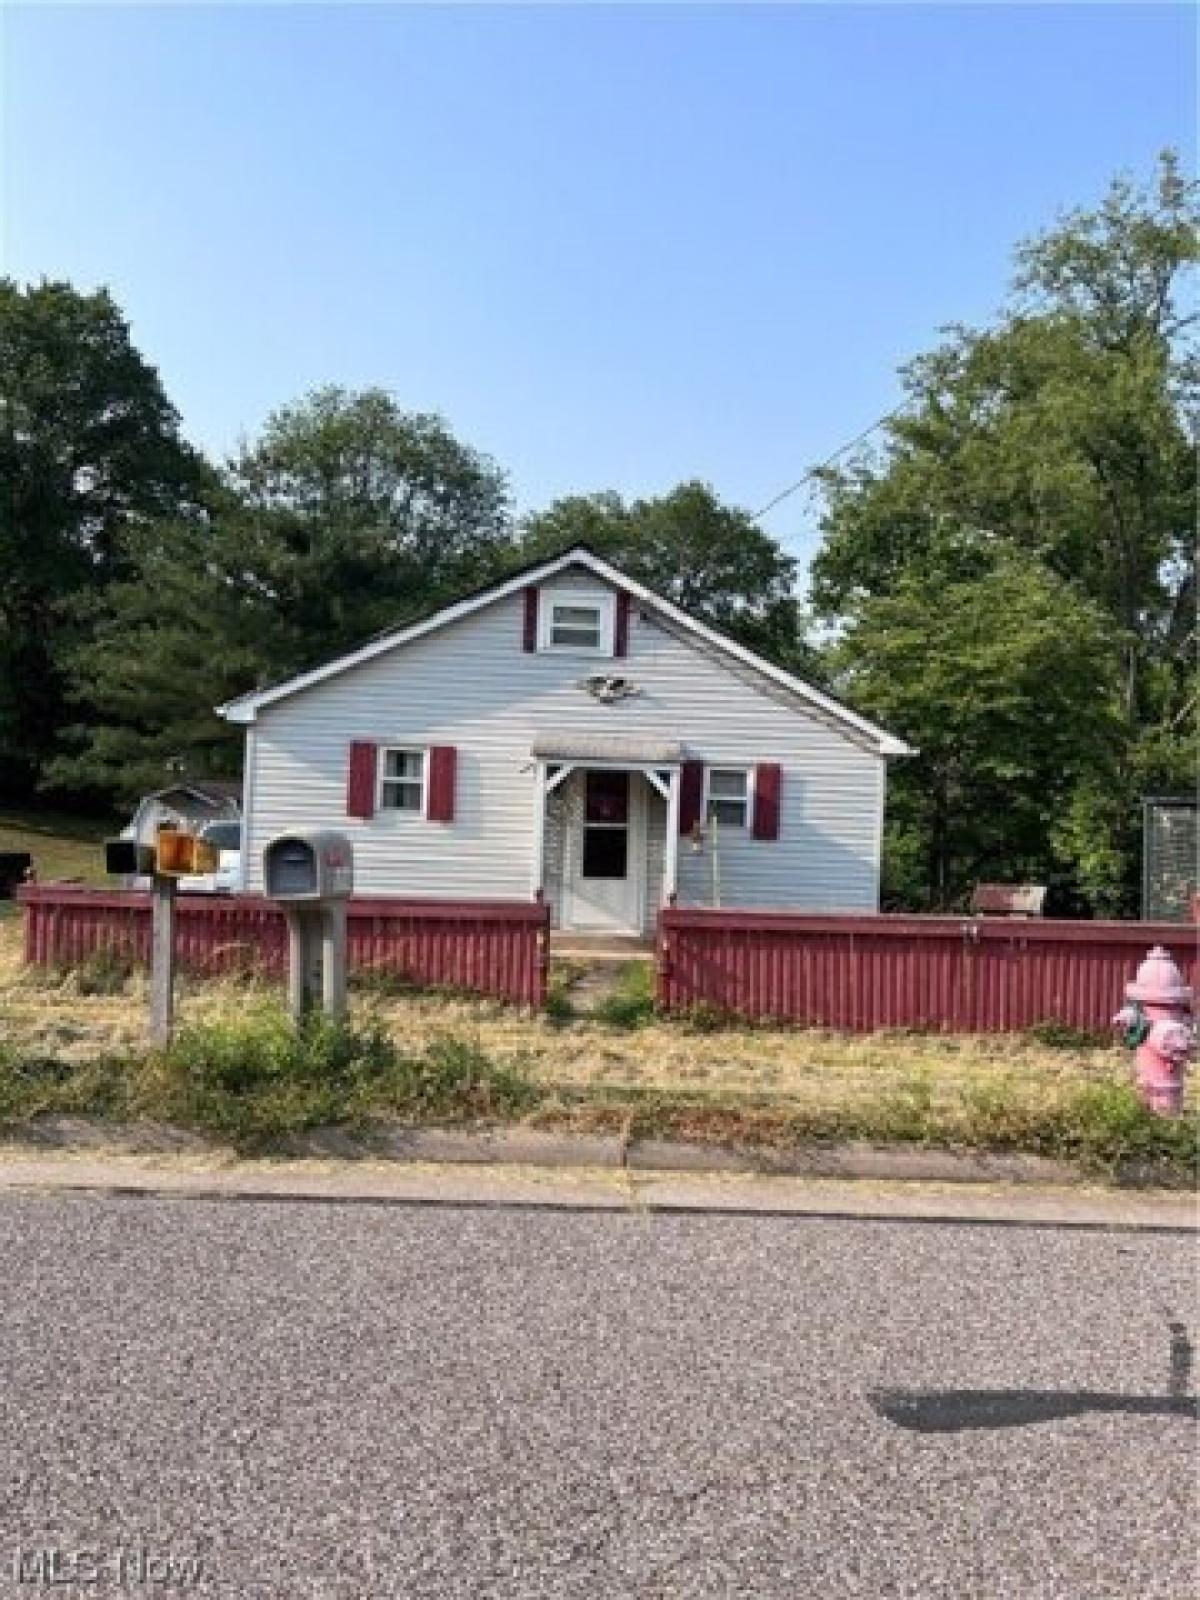 Picture of Home For Sale in Marietta, Ohio, United States